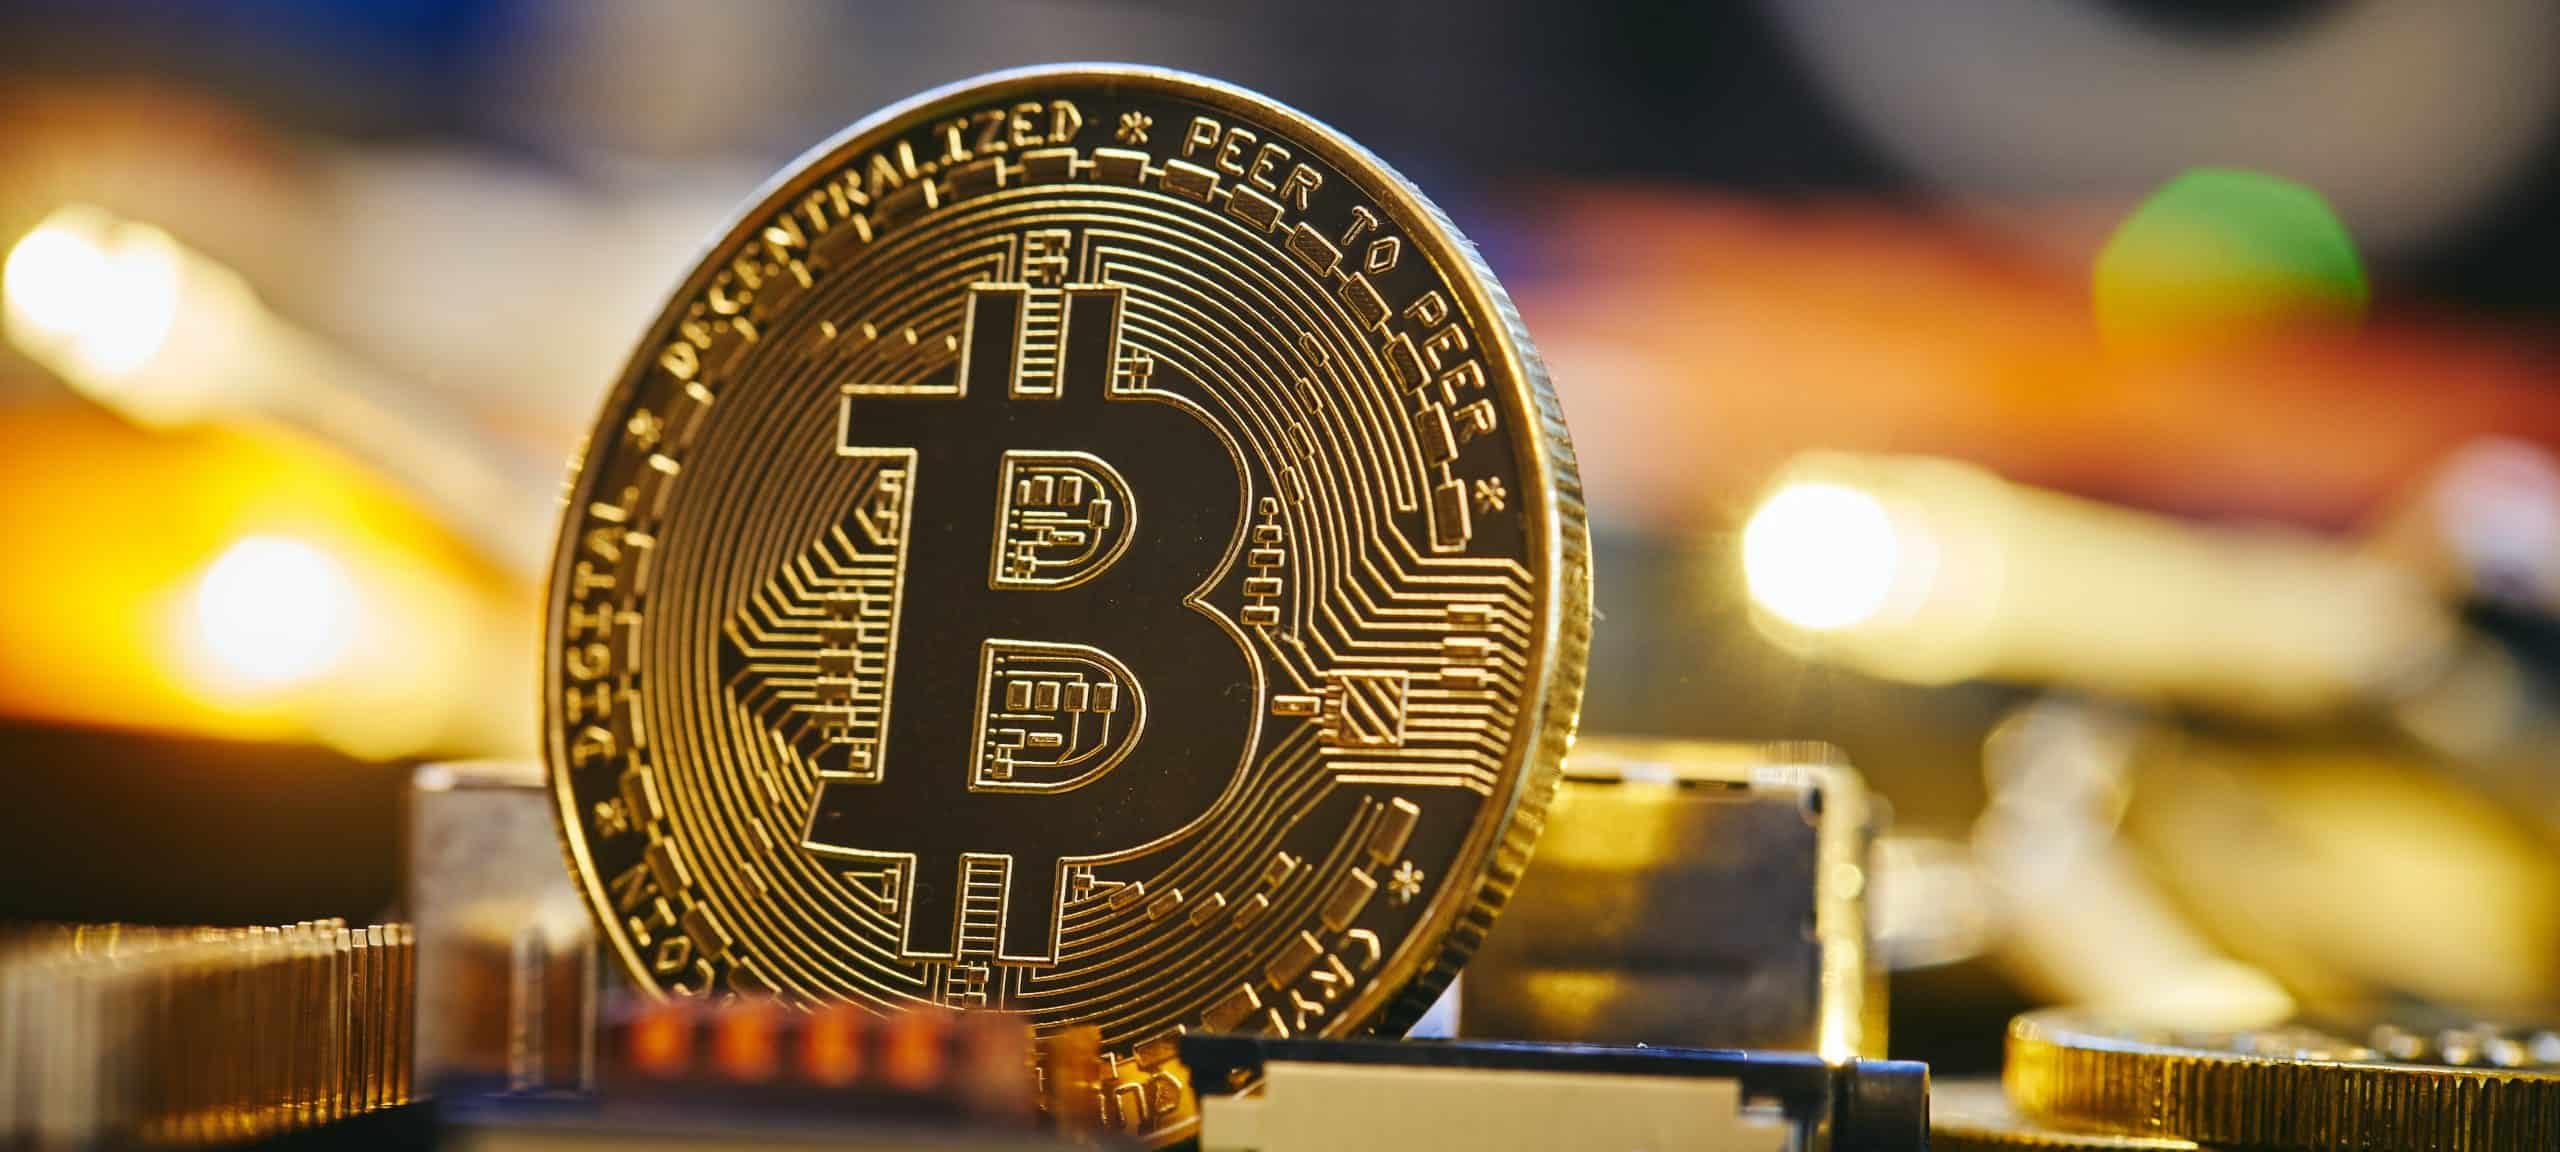 Mining-Unternehmen rüstet für Bitcoin Halving auf, während andere Kryptowährungen zulegen